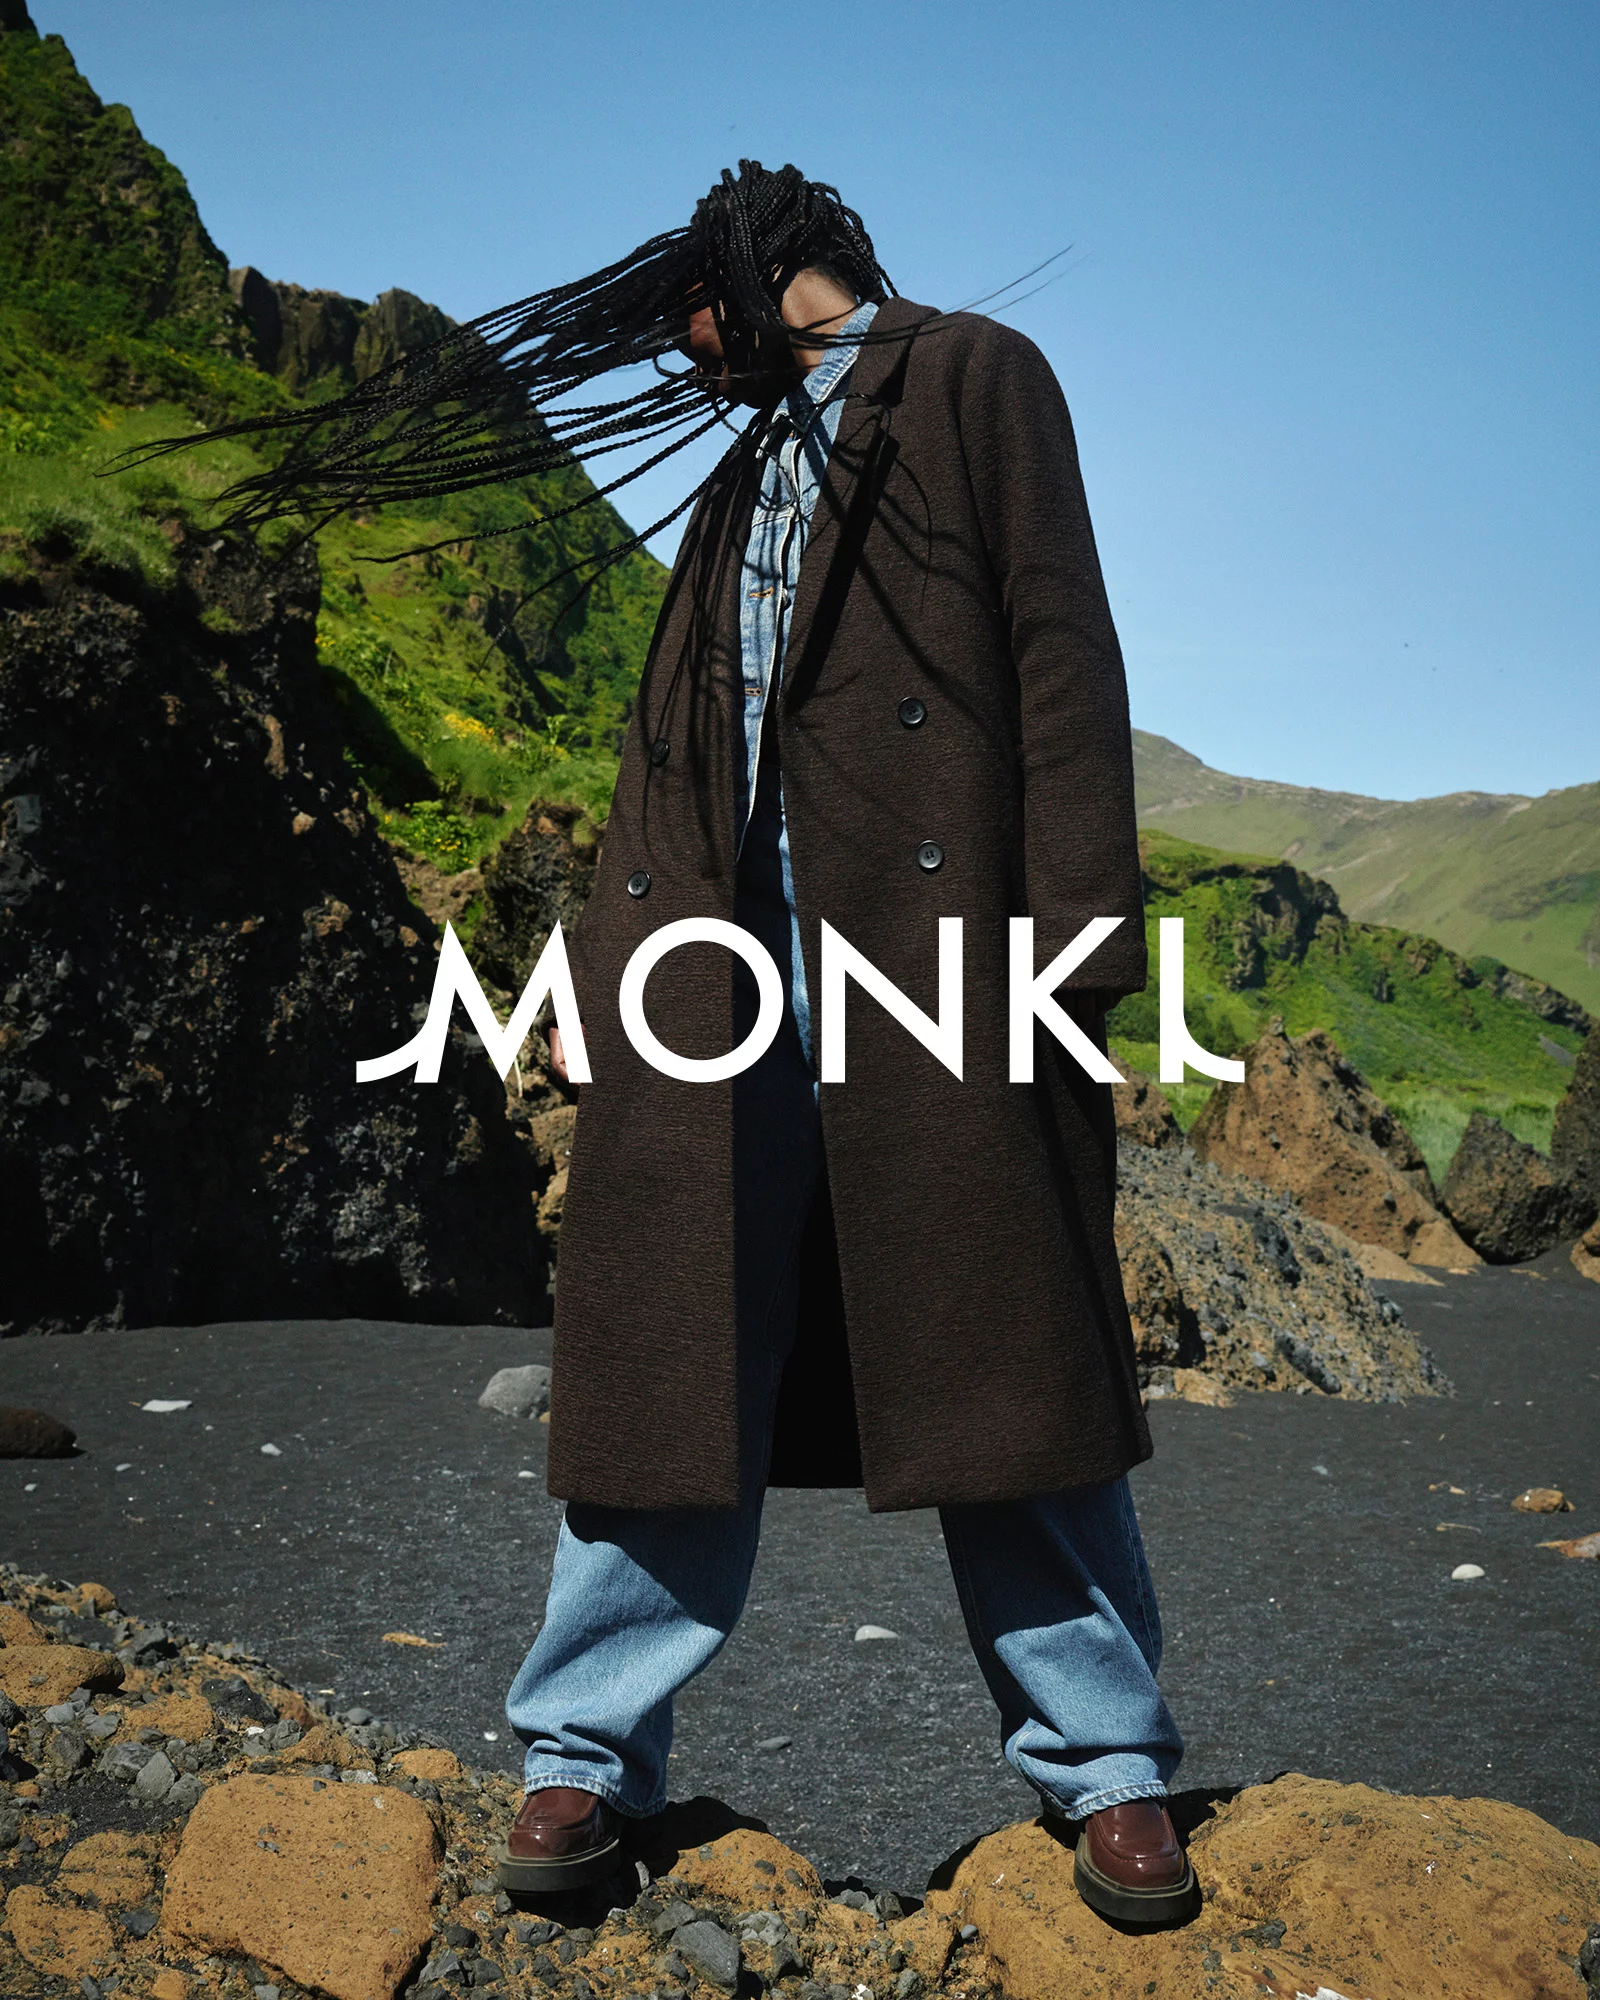 MONKI 1 by Tobias LUNDKVIST